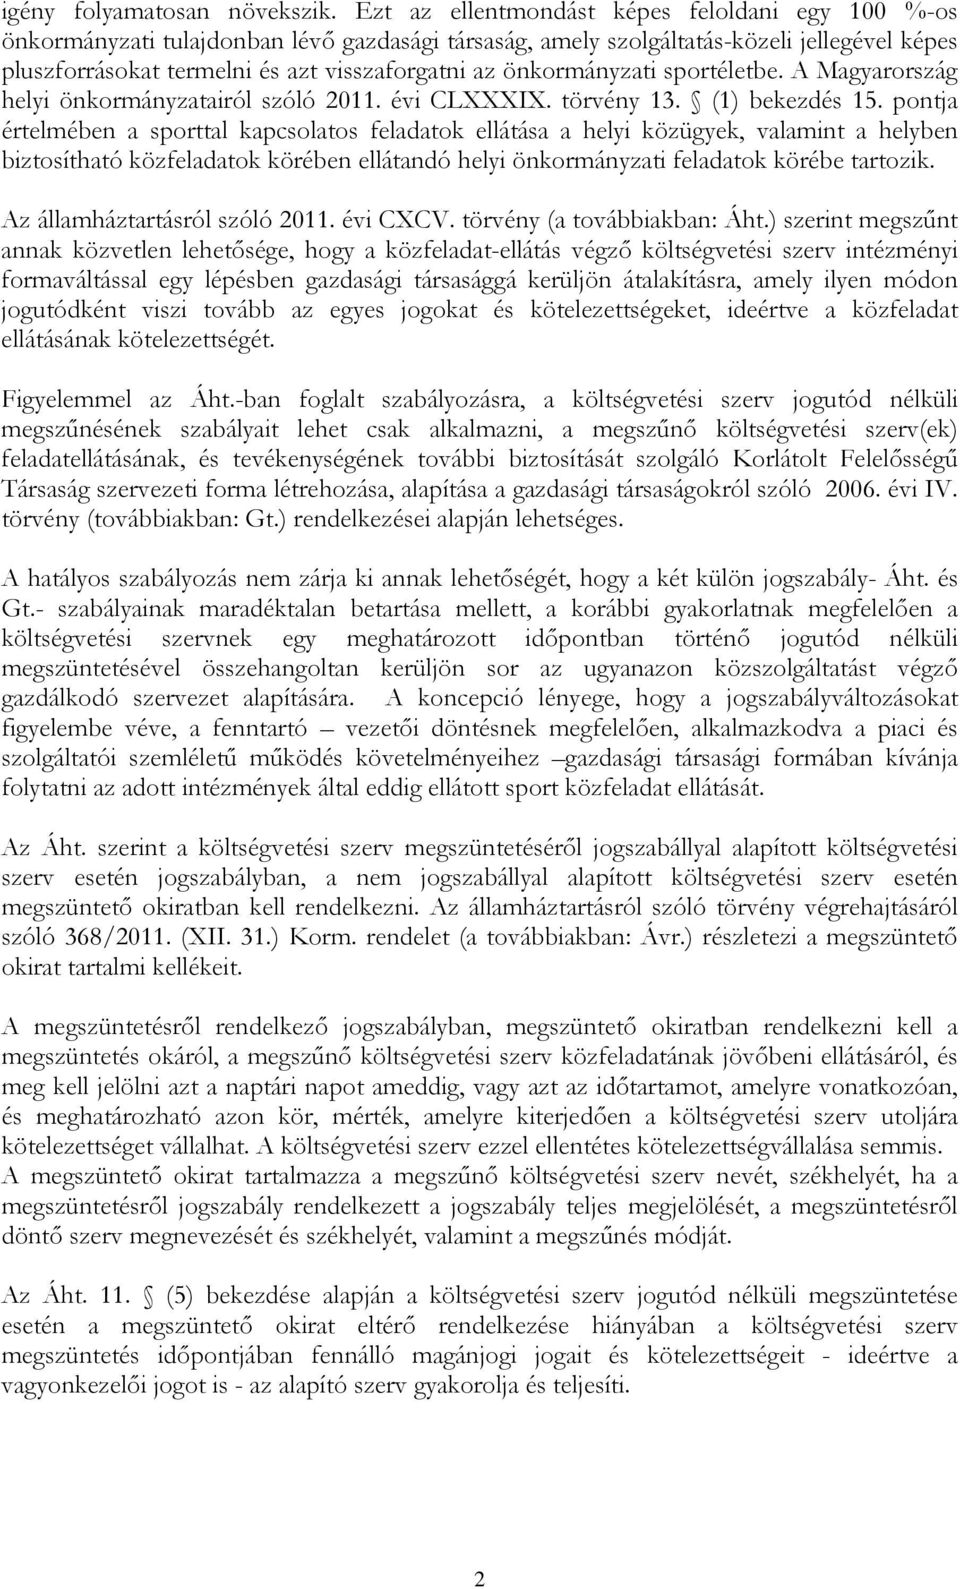 önkormányzati sportéletbe. A Magyarország helyi önkormányzatairól szóló 2011. évi CLXXXIX. törvény 13. (1) bekezdés 15.